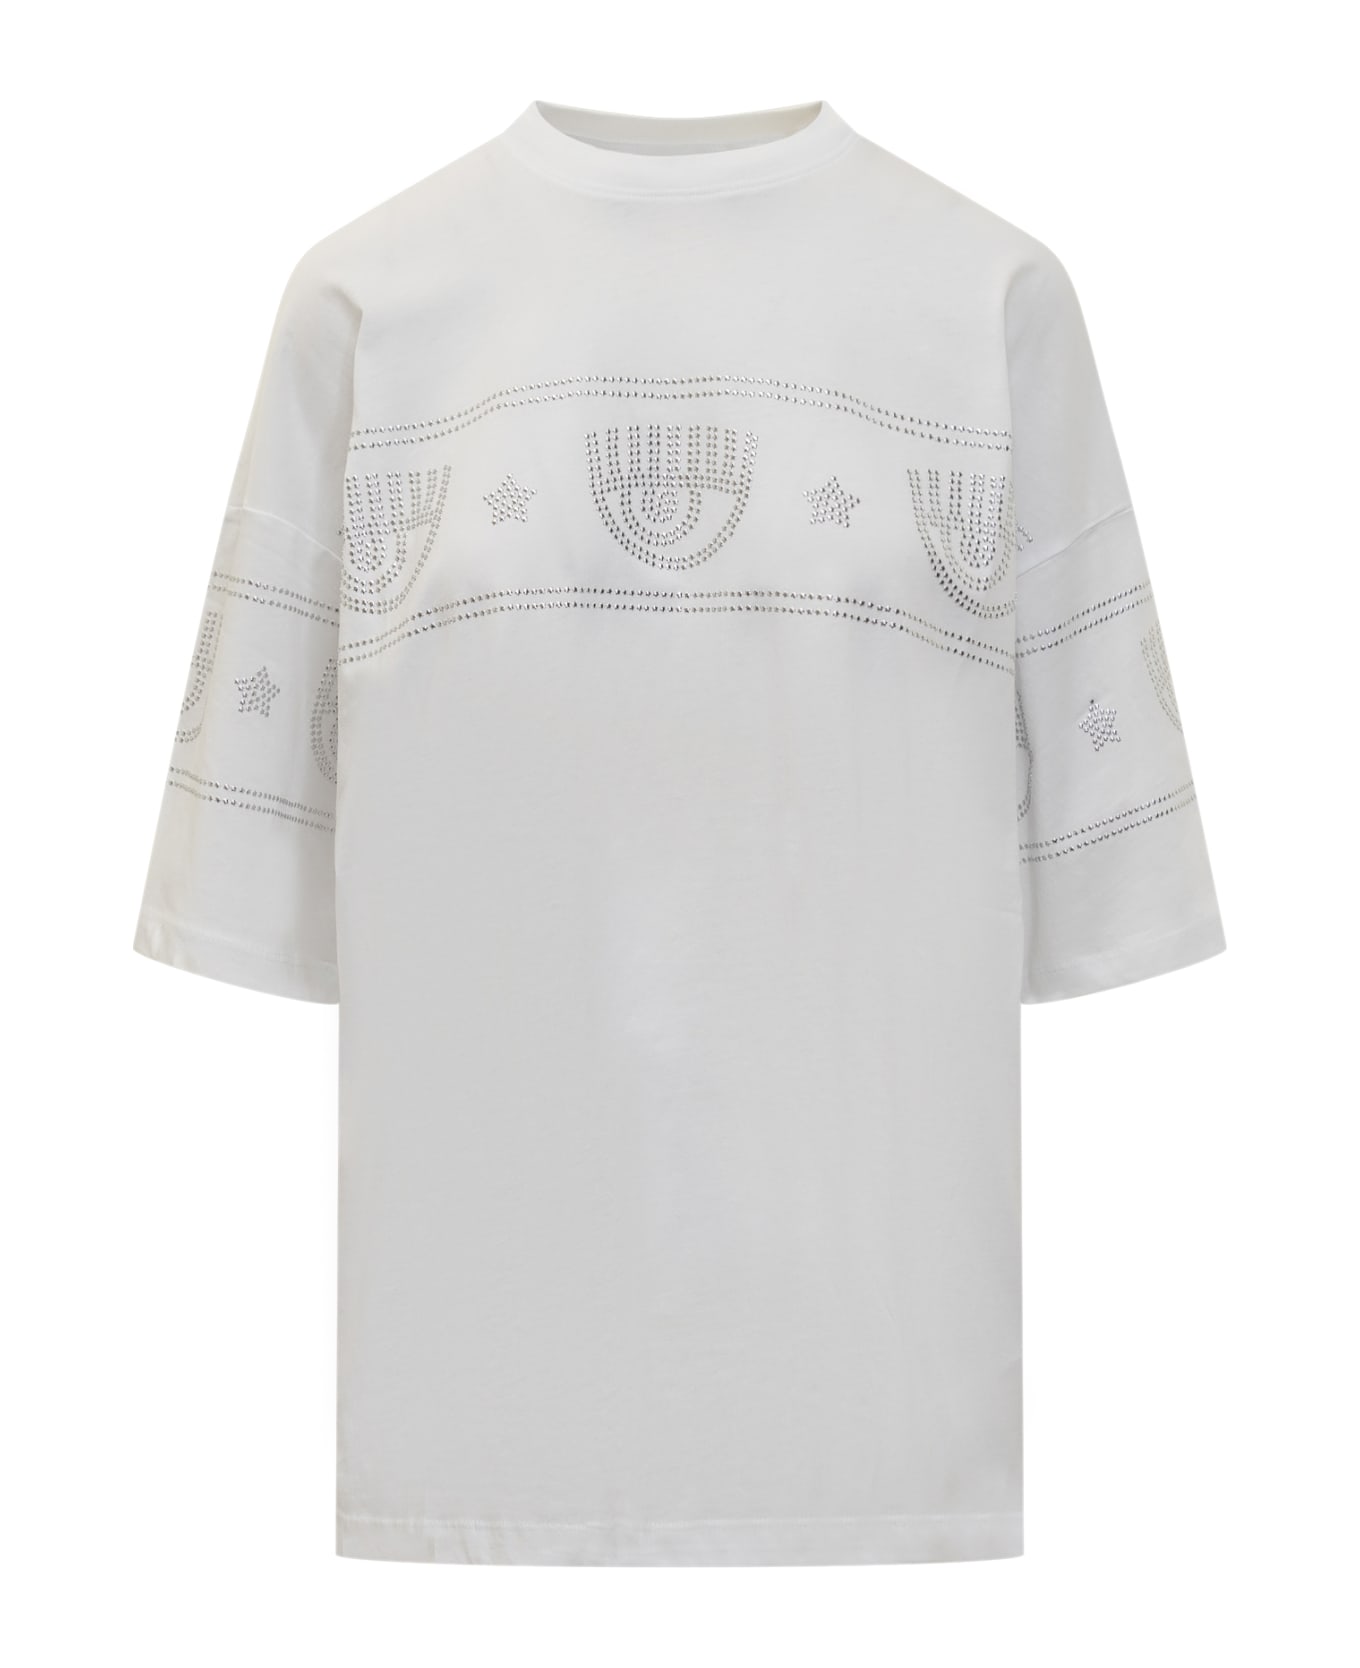 Chiara Ferragni Logomania 640 T-shirt - WHITE Tシャツ